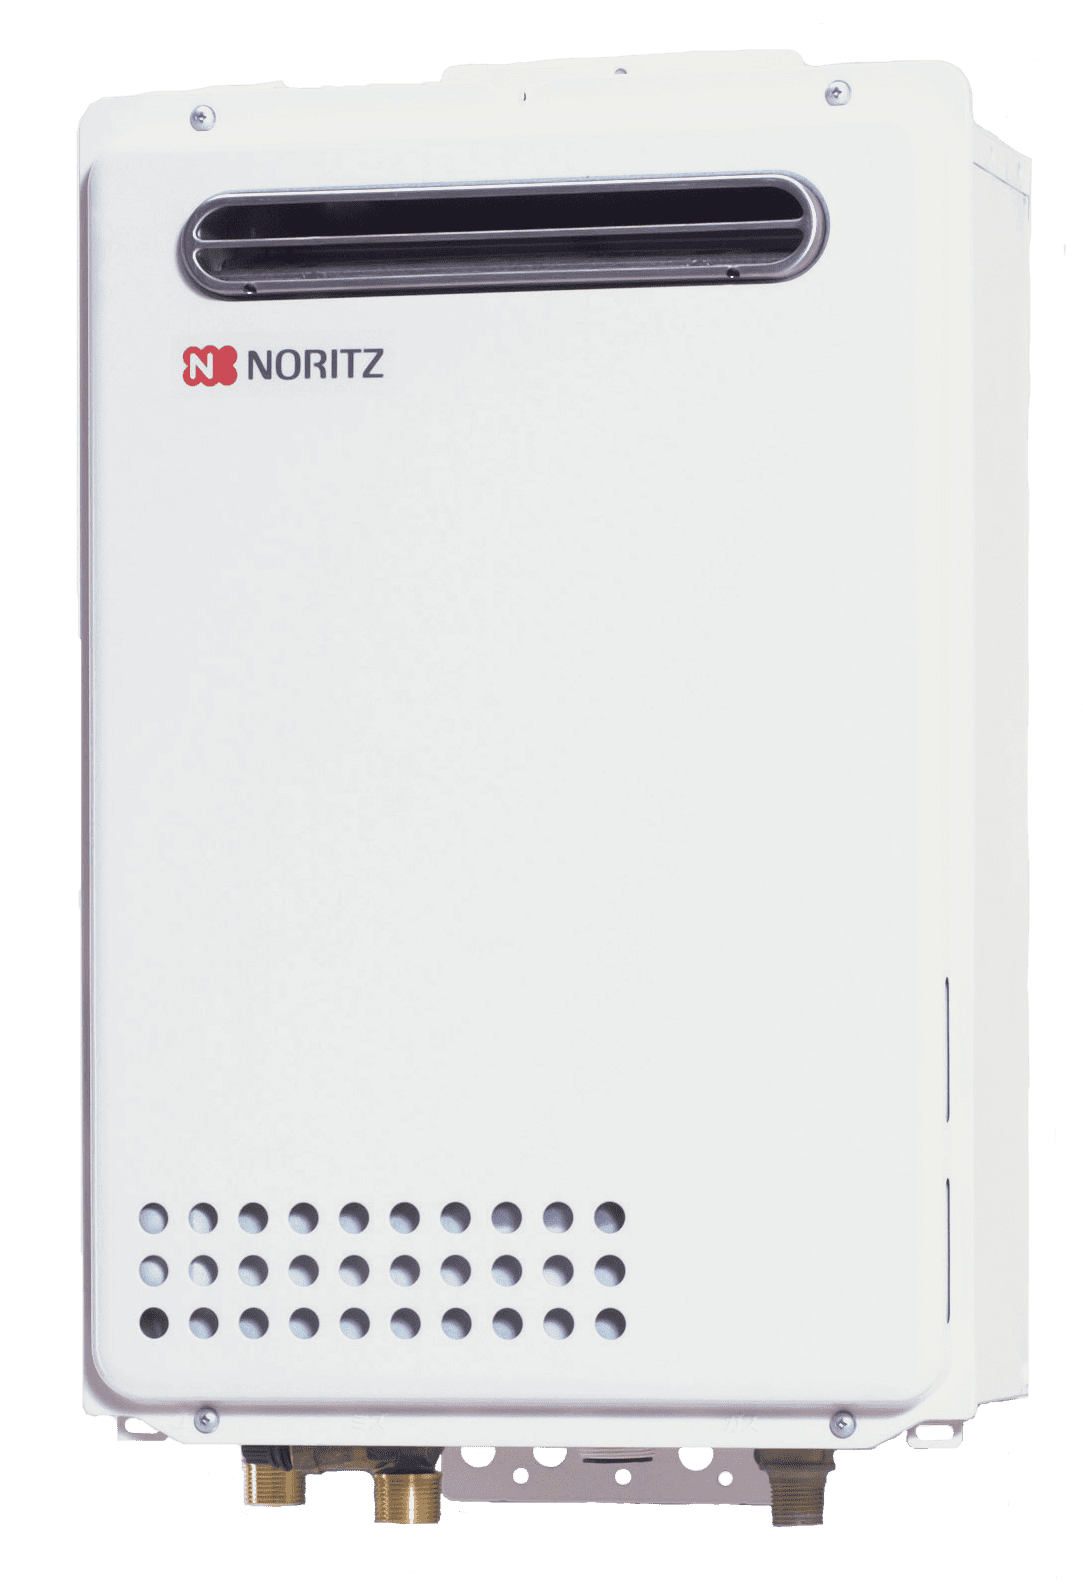 売り込み ノーリツ NORITZ GQ-1628WS-T-KSBL ガス給湯器 家庭用